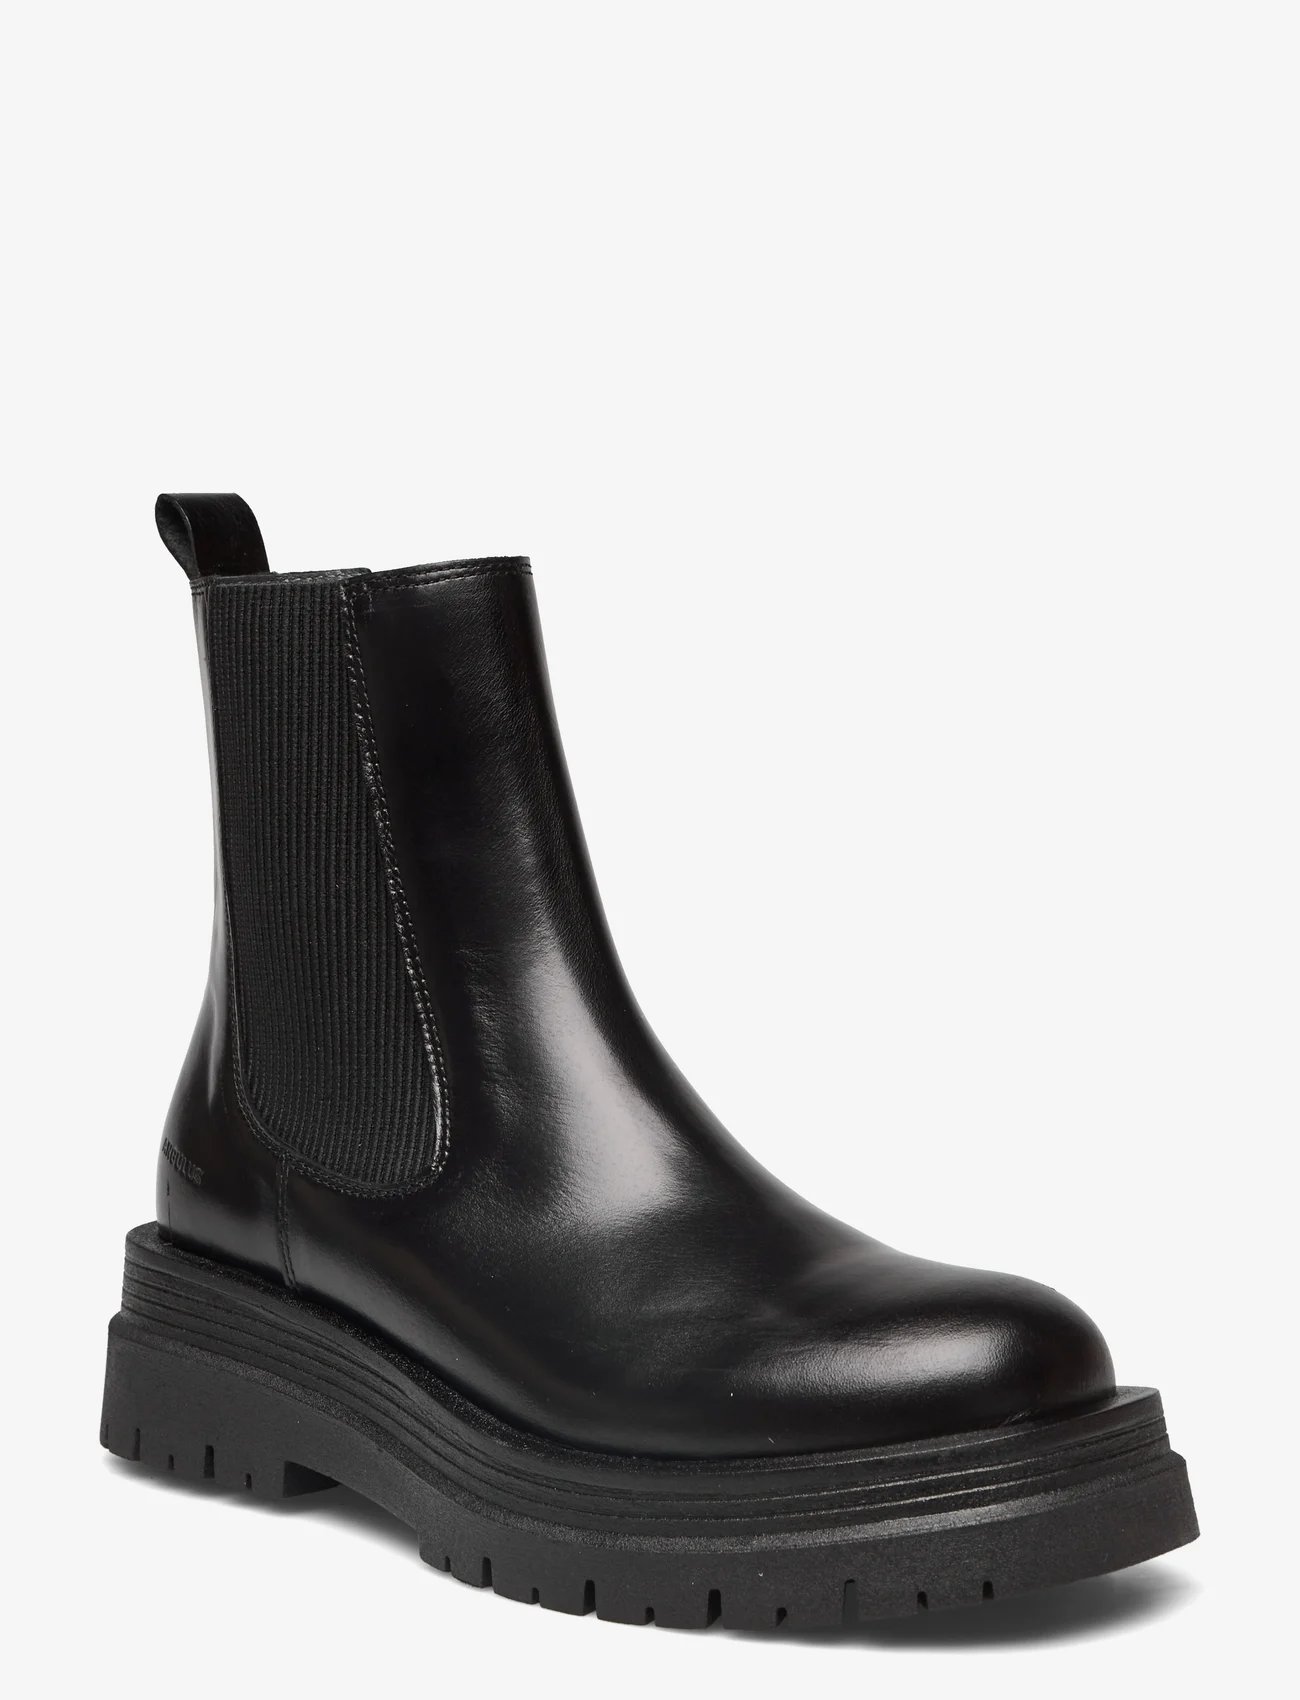 ANGULUS - Boots - flat - chelsea boots - 1835/019 black /black - 0